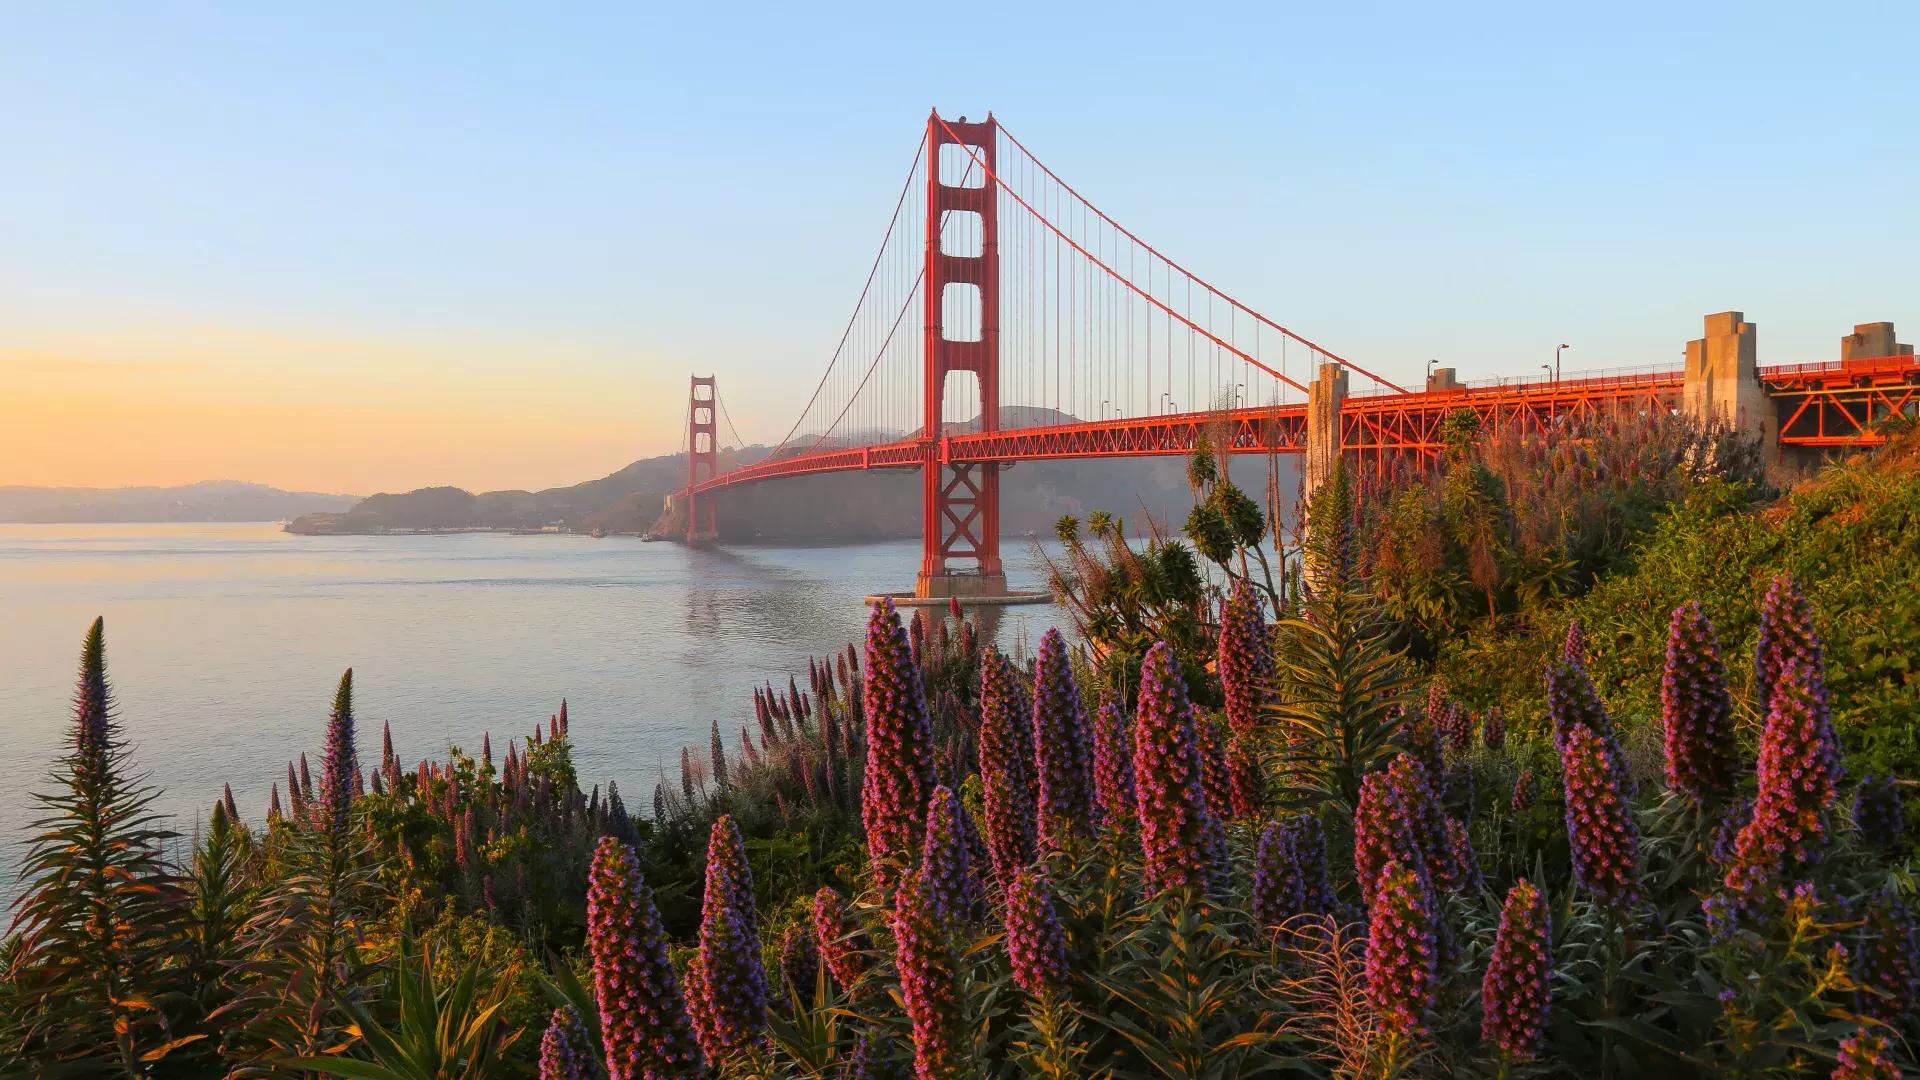 金门大桥(Golden Gate Bridge)는 전경에 큰 꽃이 있는 사진입니다.